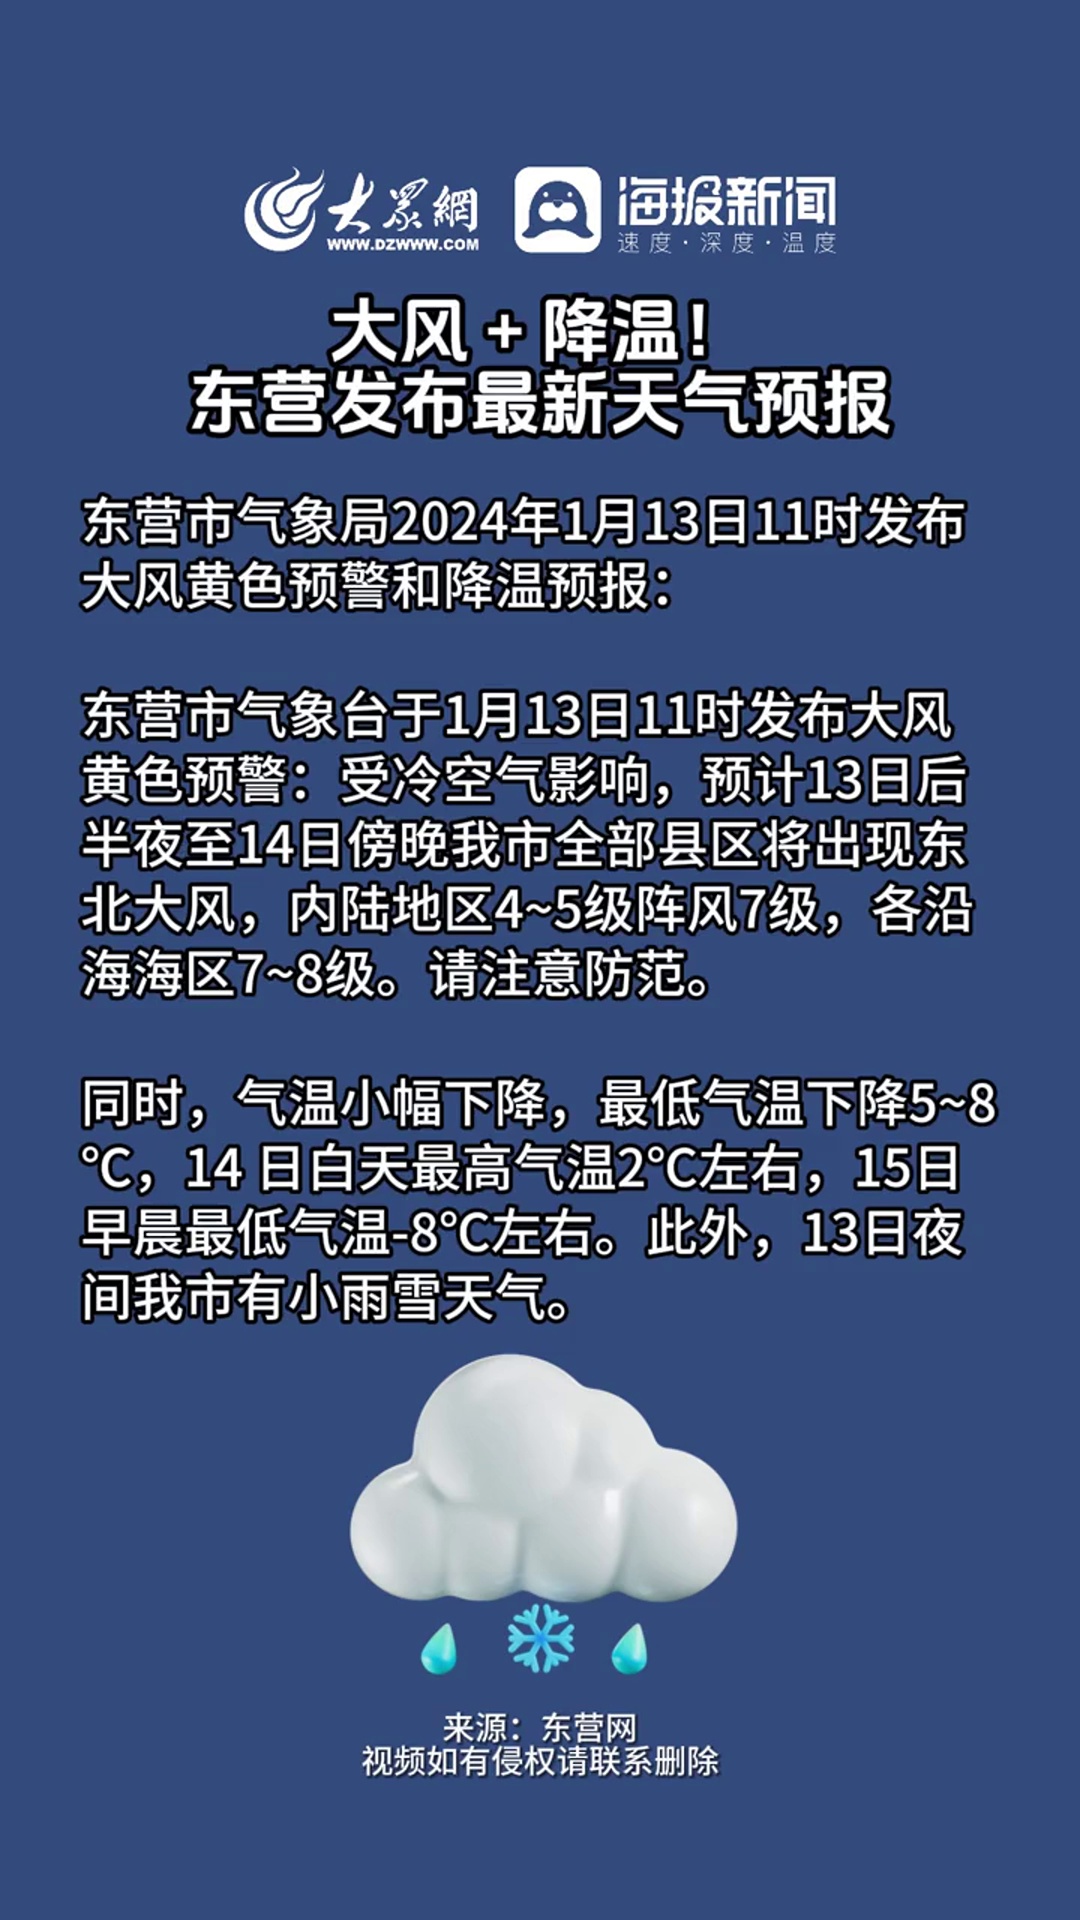 大风降温东营发布最新天气预报